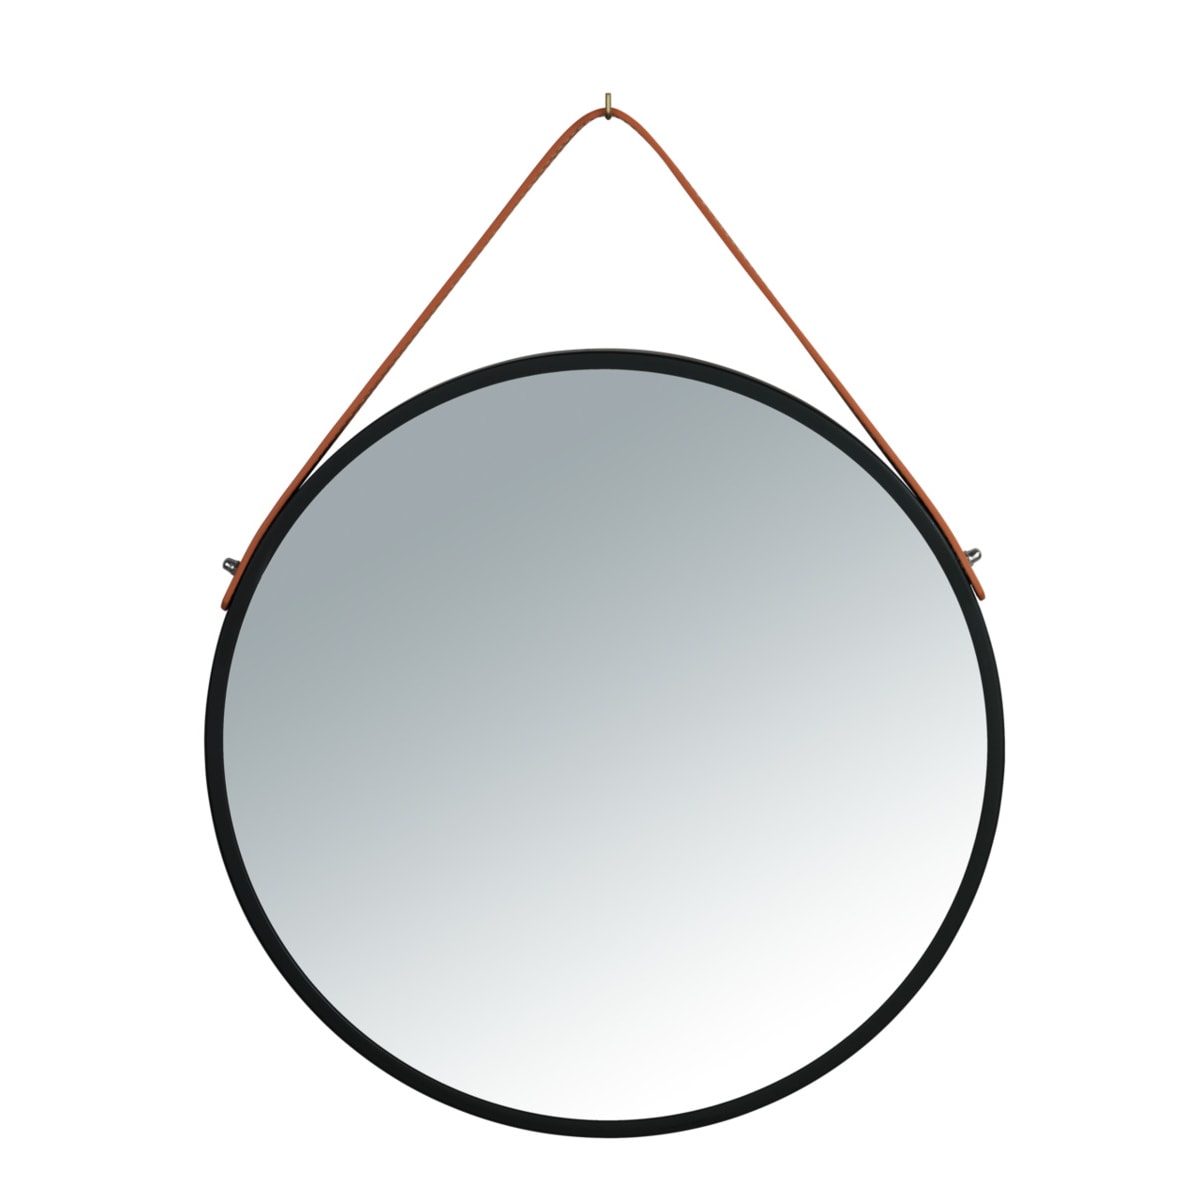 Wenko Wall mirror Borrone around 40 cm